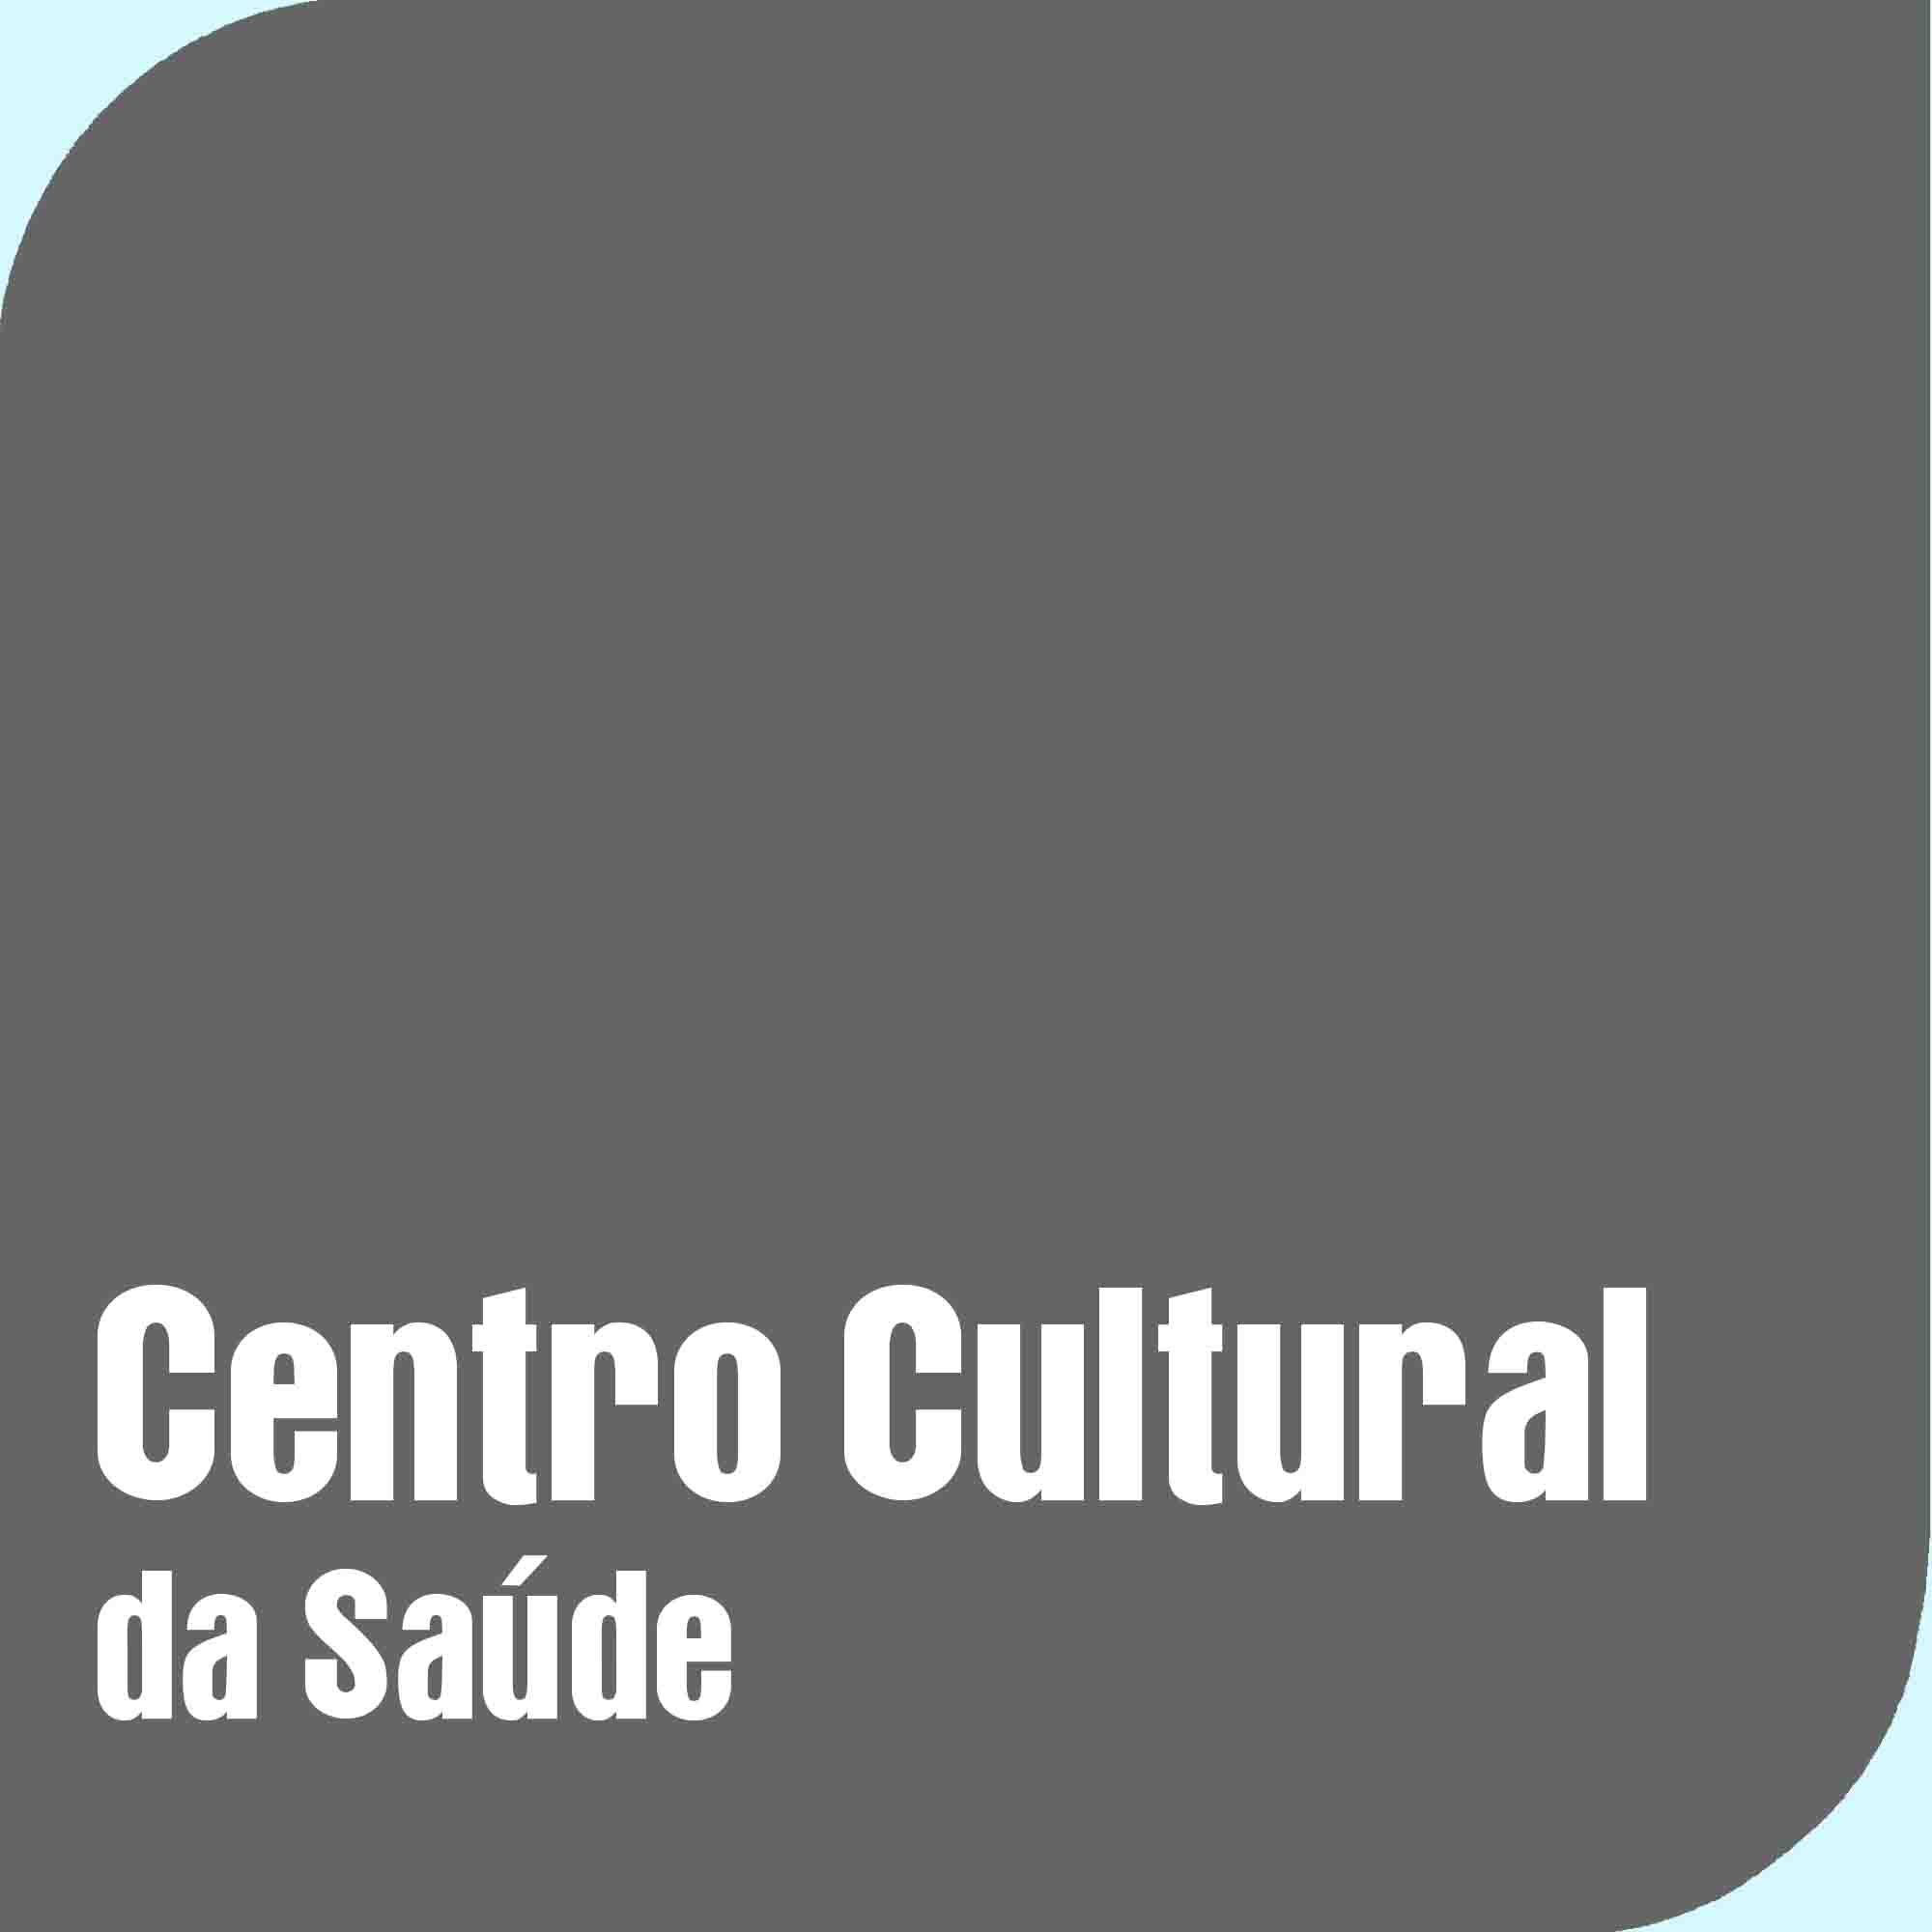 Centro Cultural da Saúde